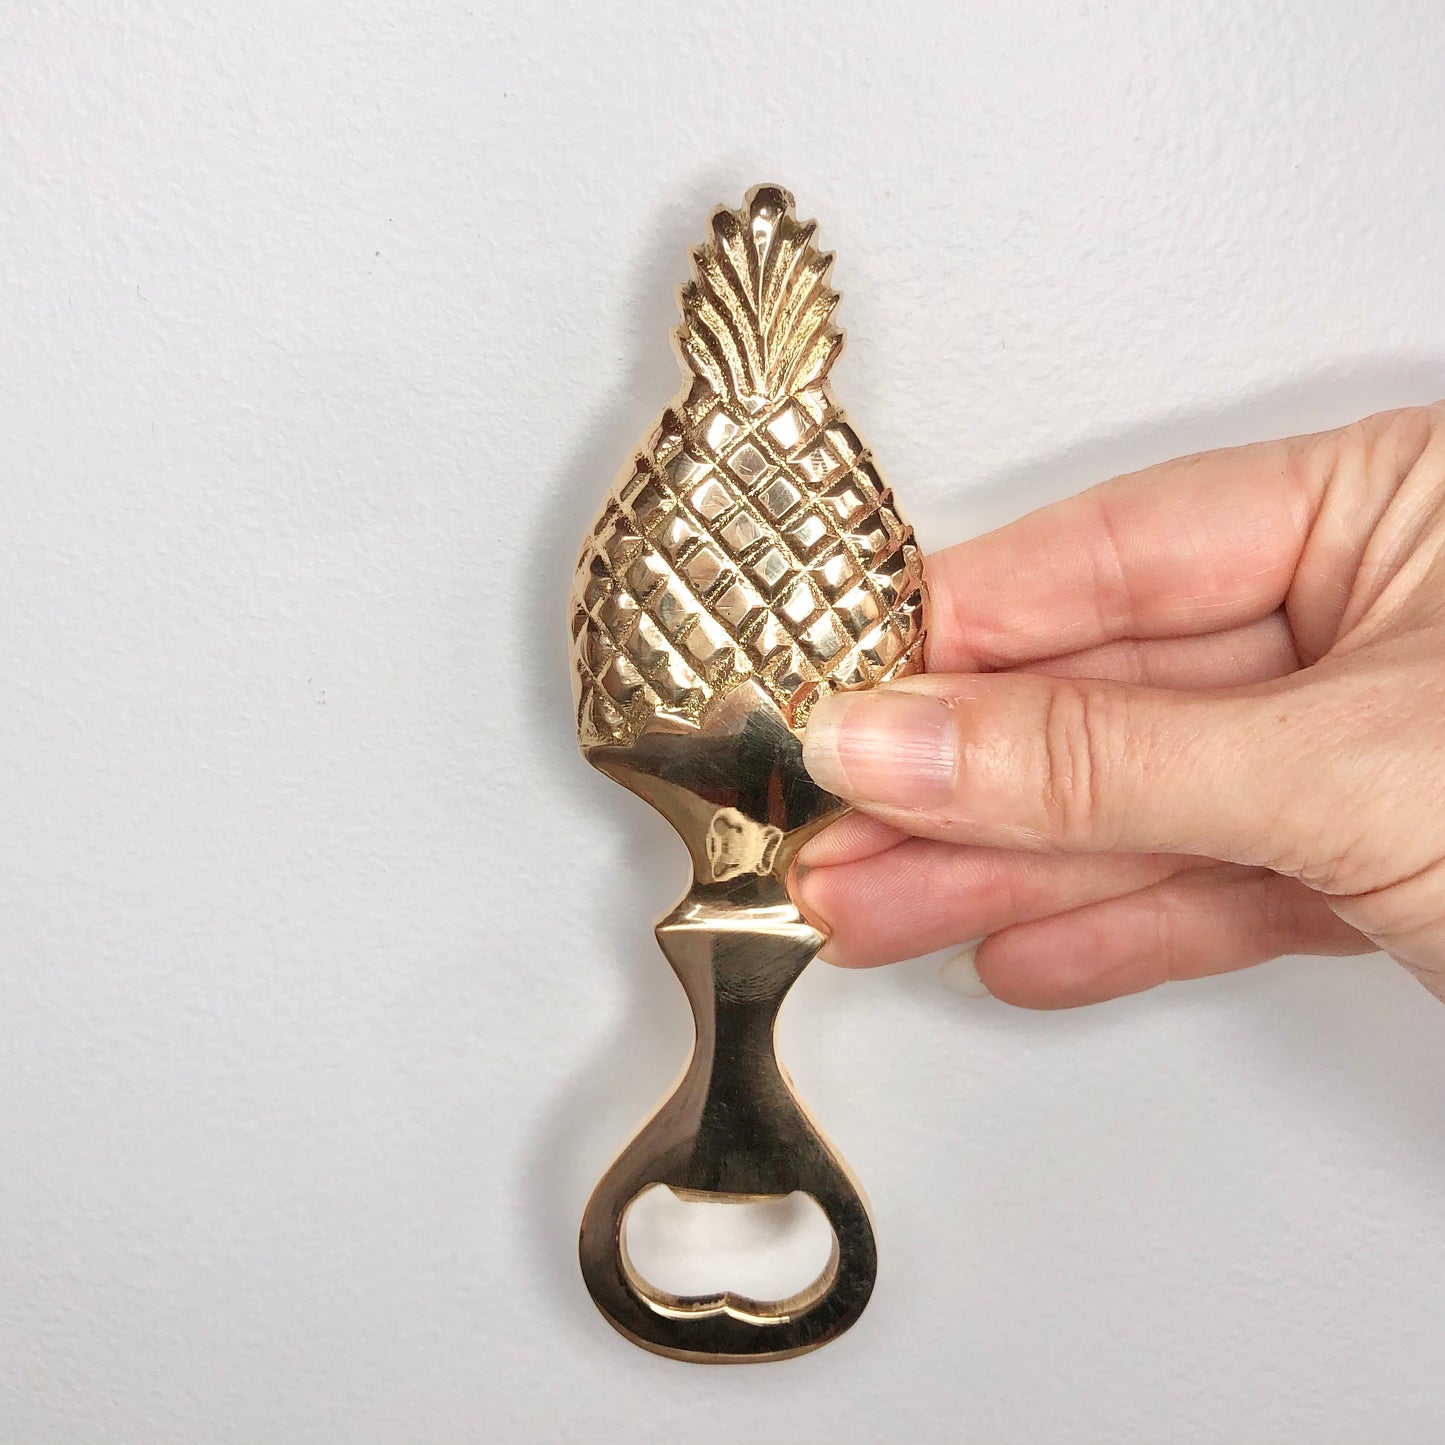 Pineapple brass bottle opener